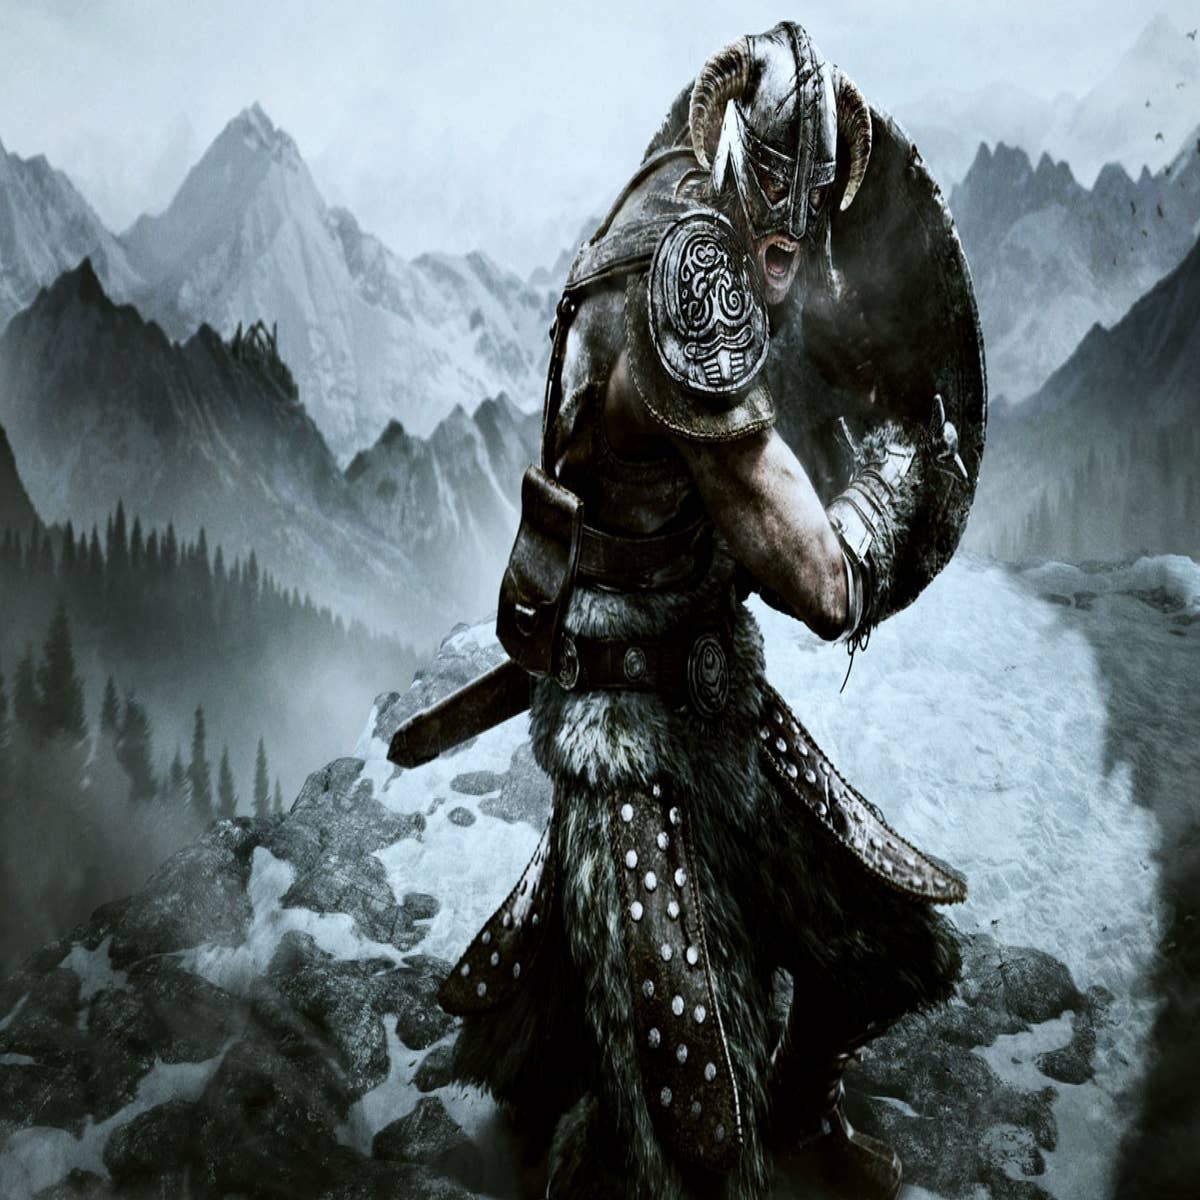 The Elder Scrolls V: Skyrim PS4 Game on Sale - Sky Games